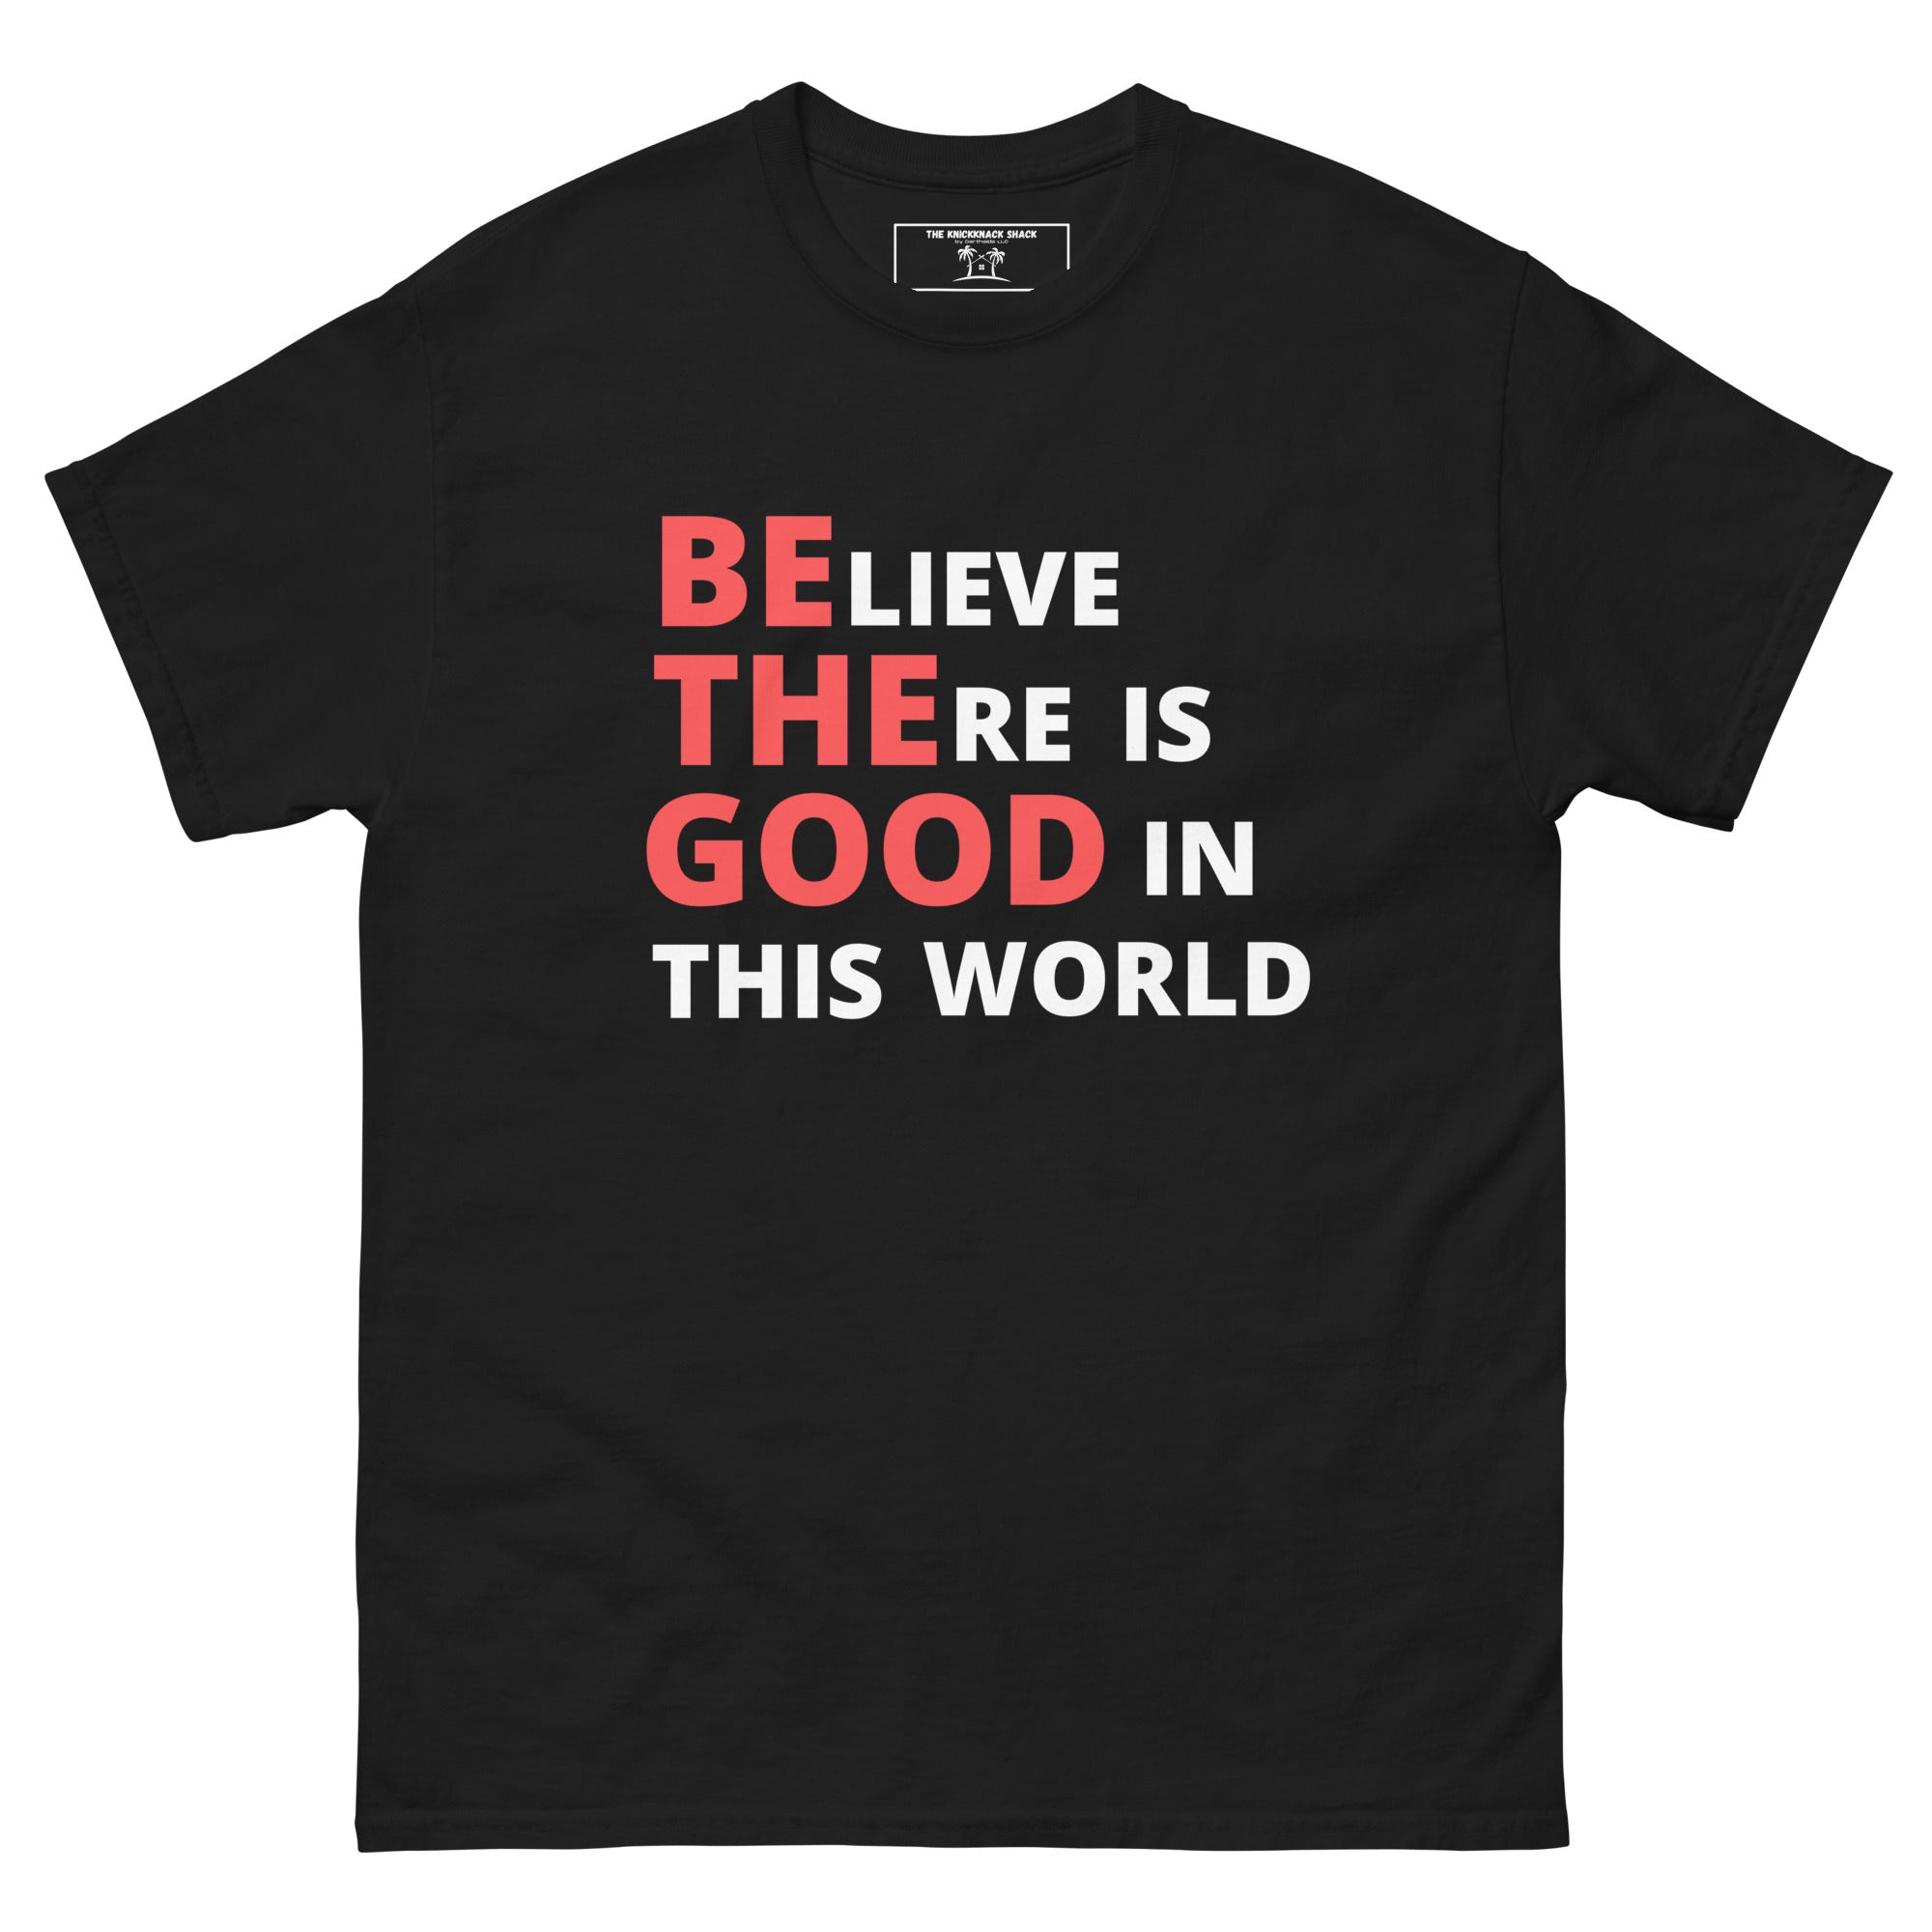 Camiseta clásica - Be The Good (colores oscuros)